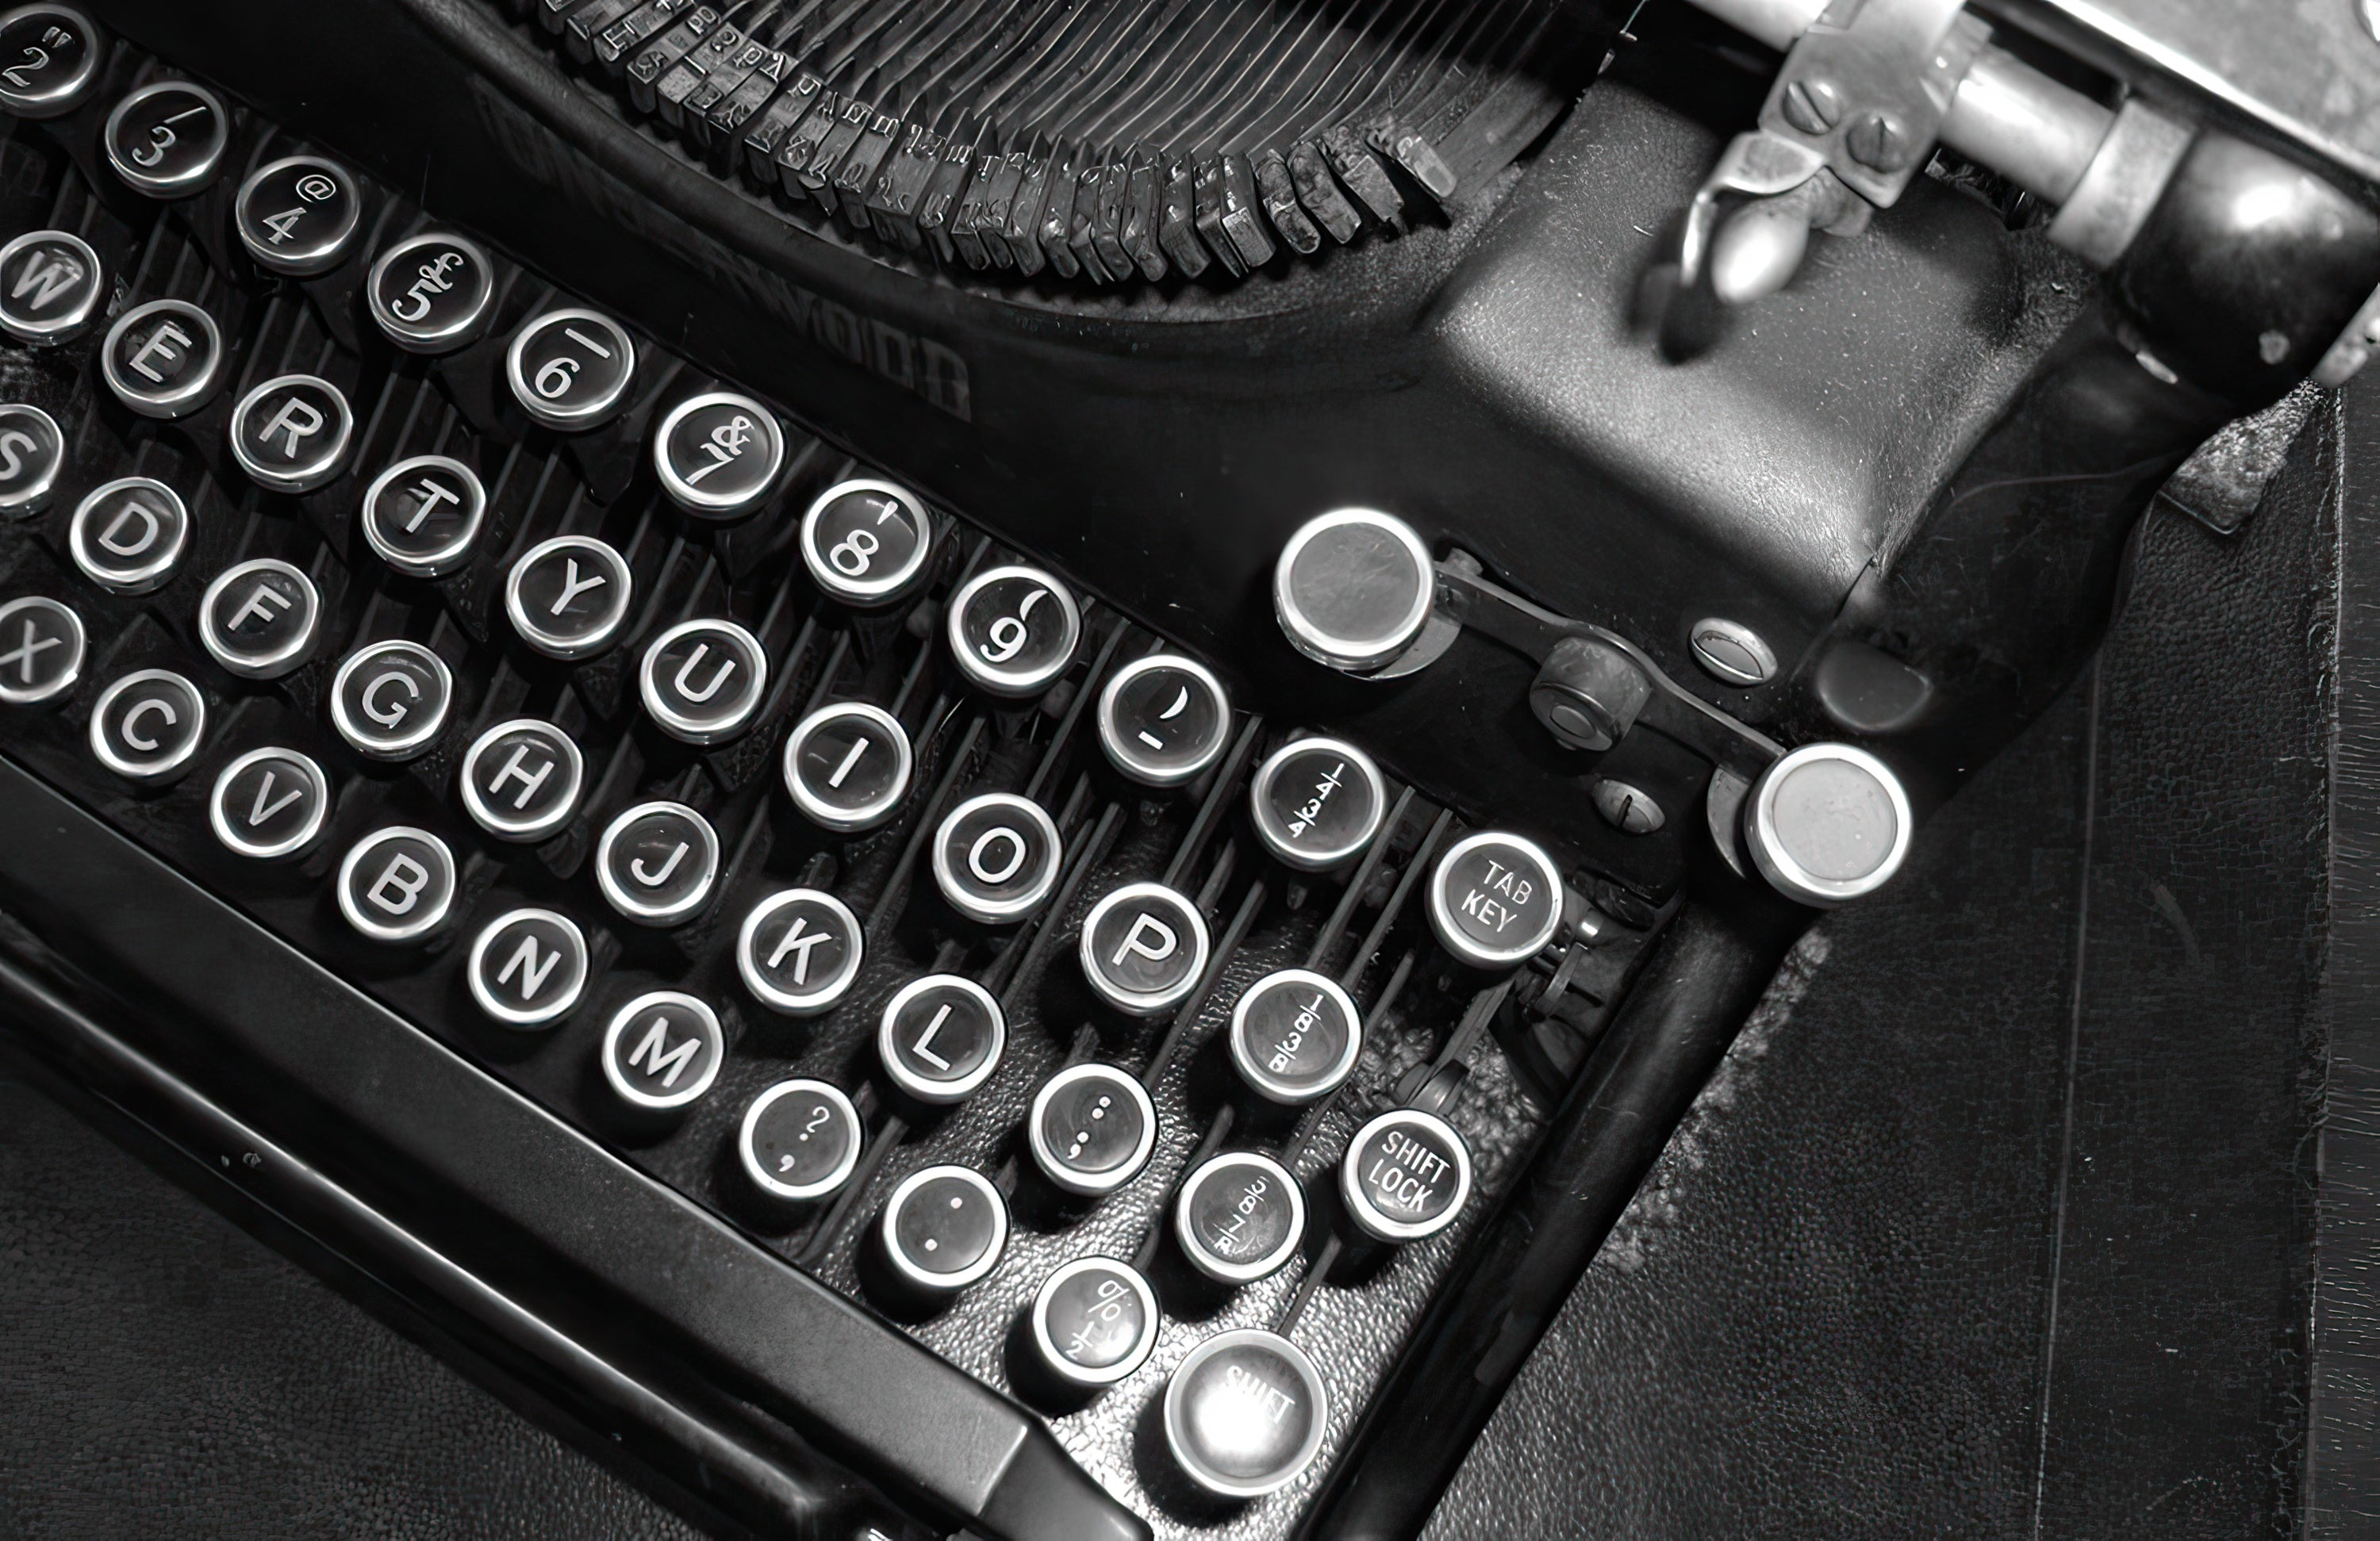 2020 Adapted Story Showcase - Image of vintage typewriter